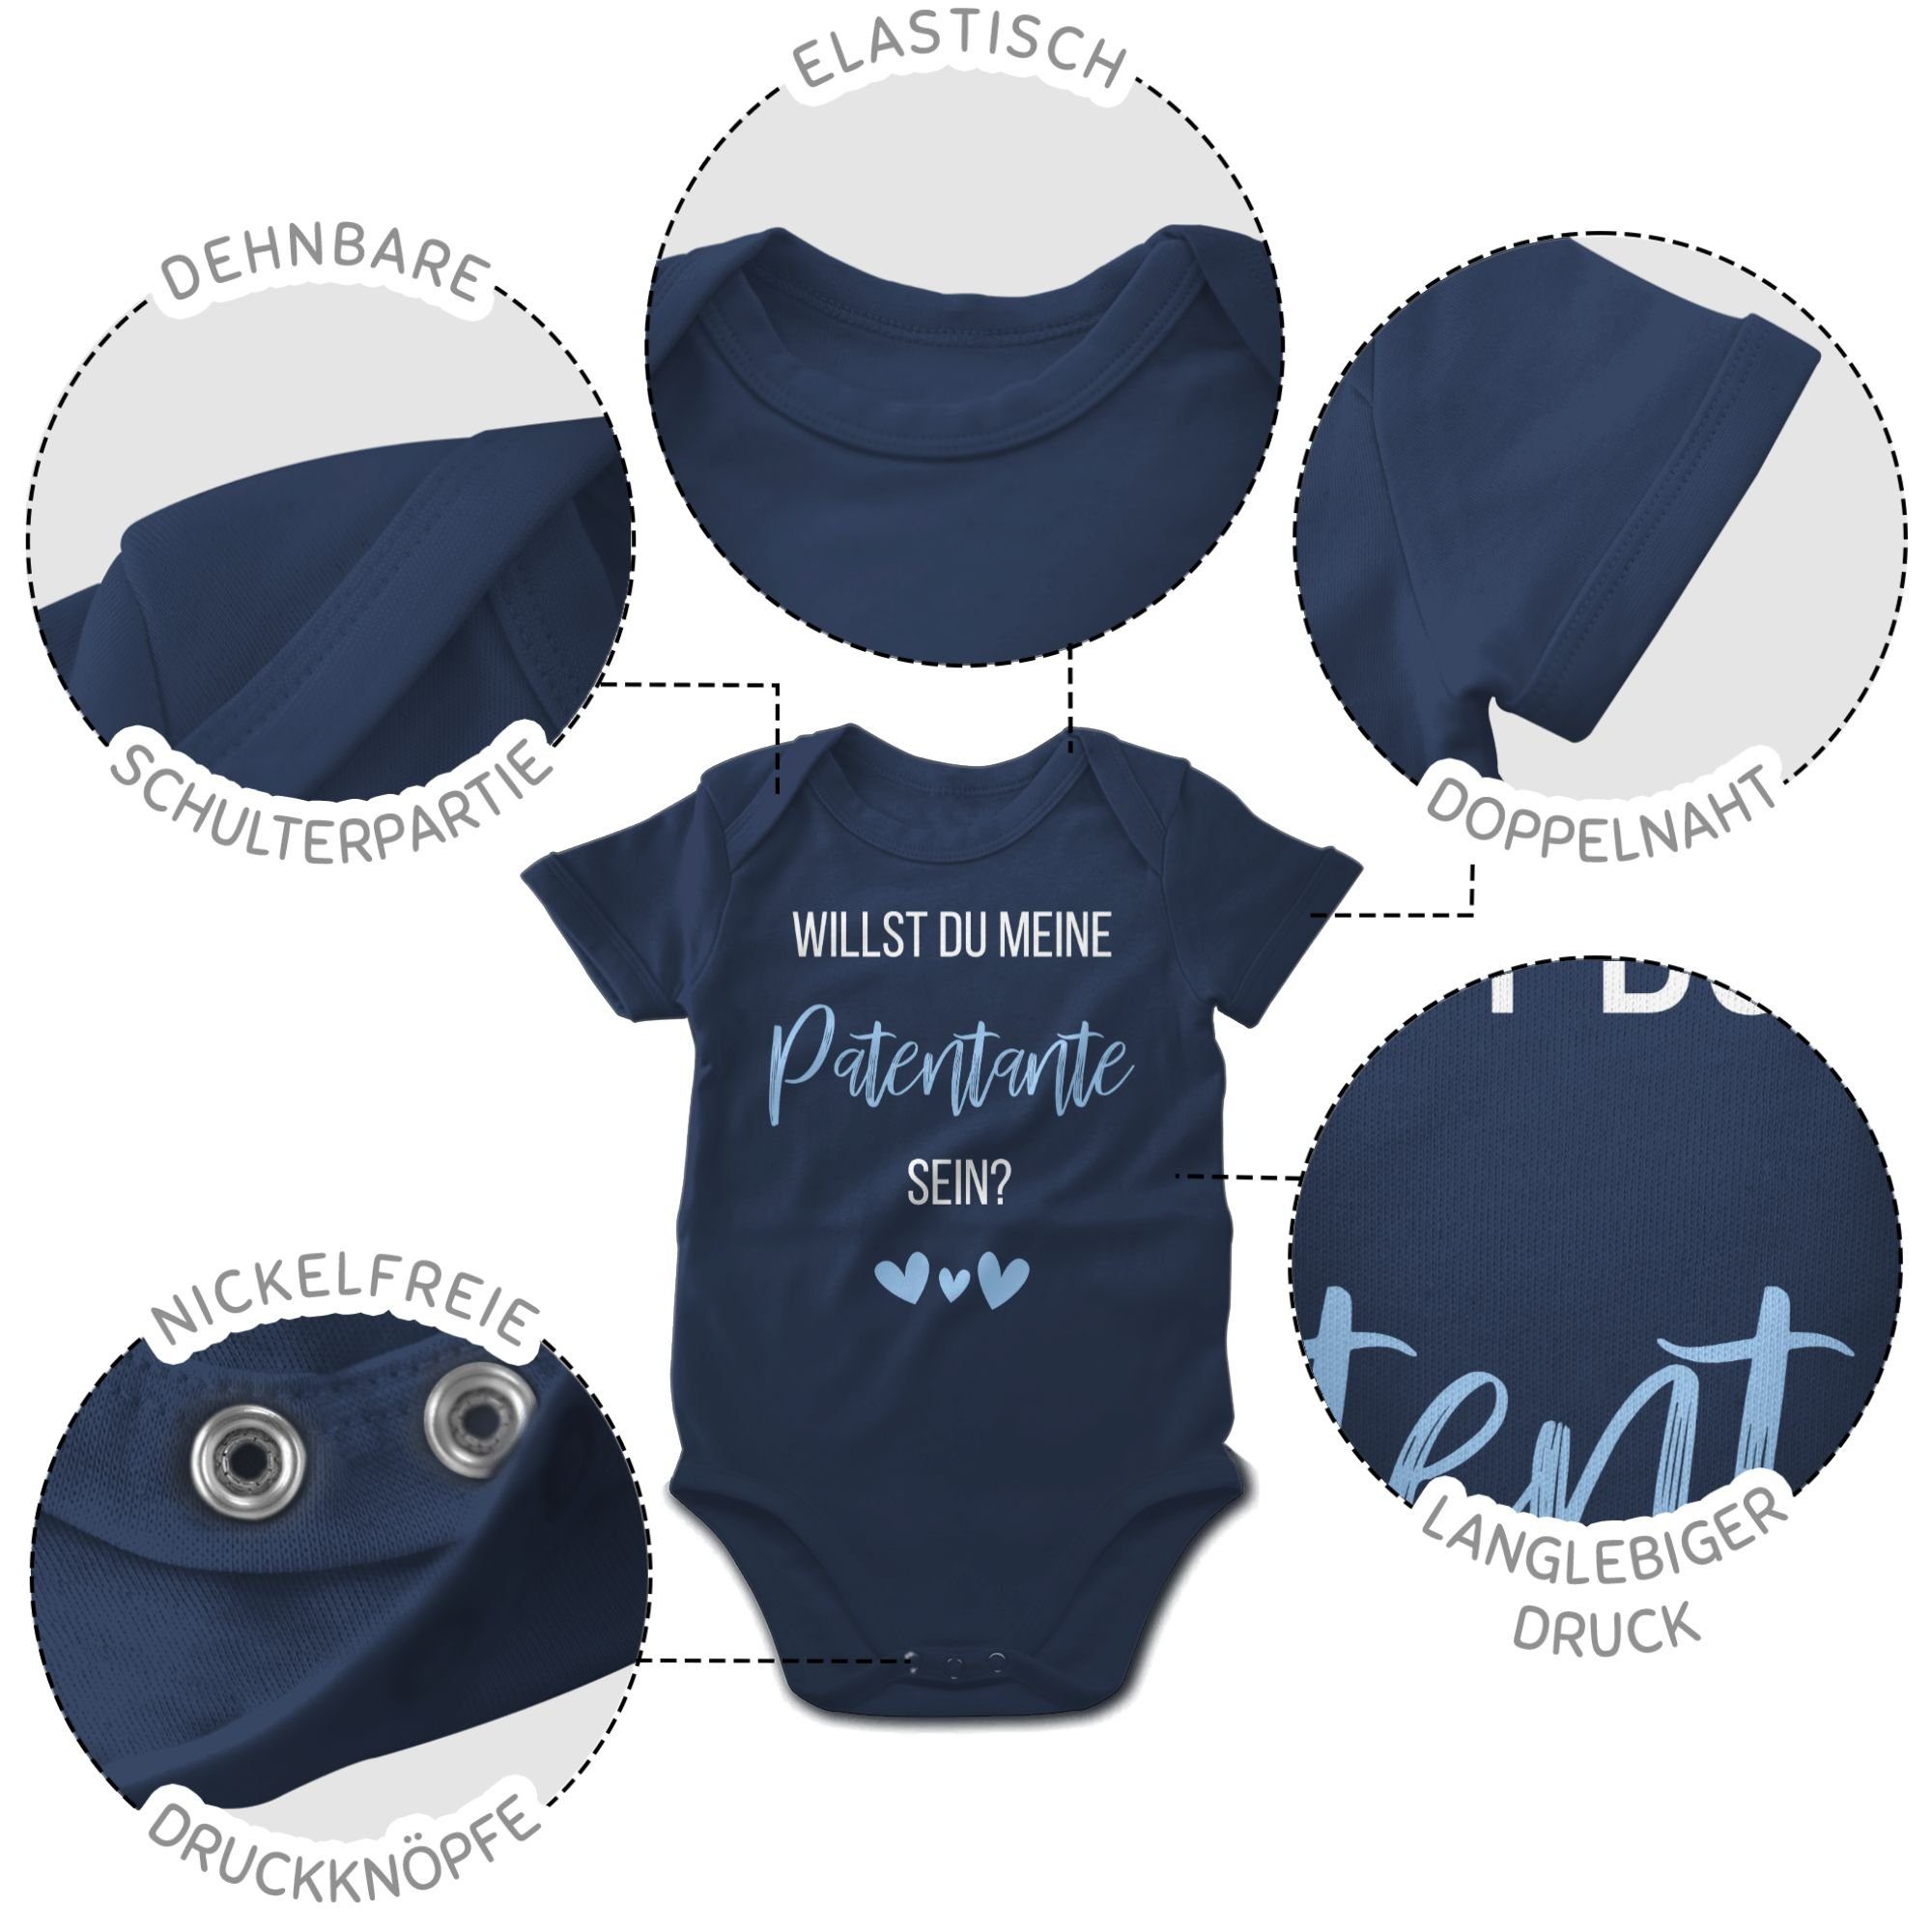 Blau meine Shirtbody Patentante Navy sein? Patentante du Babyblau Baby Shirtracer 1 Willst